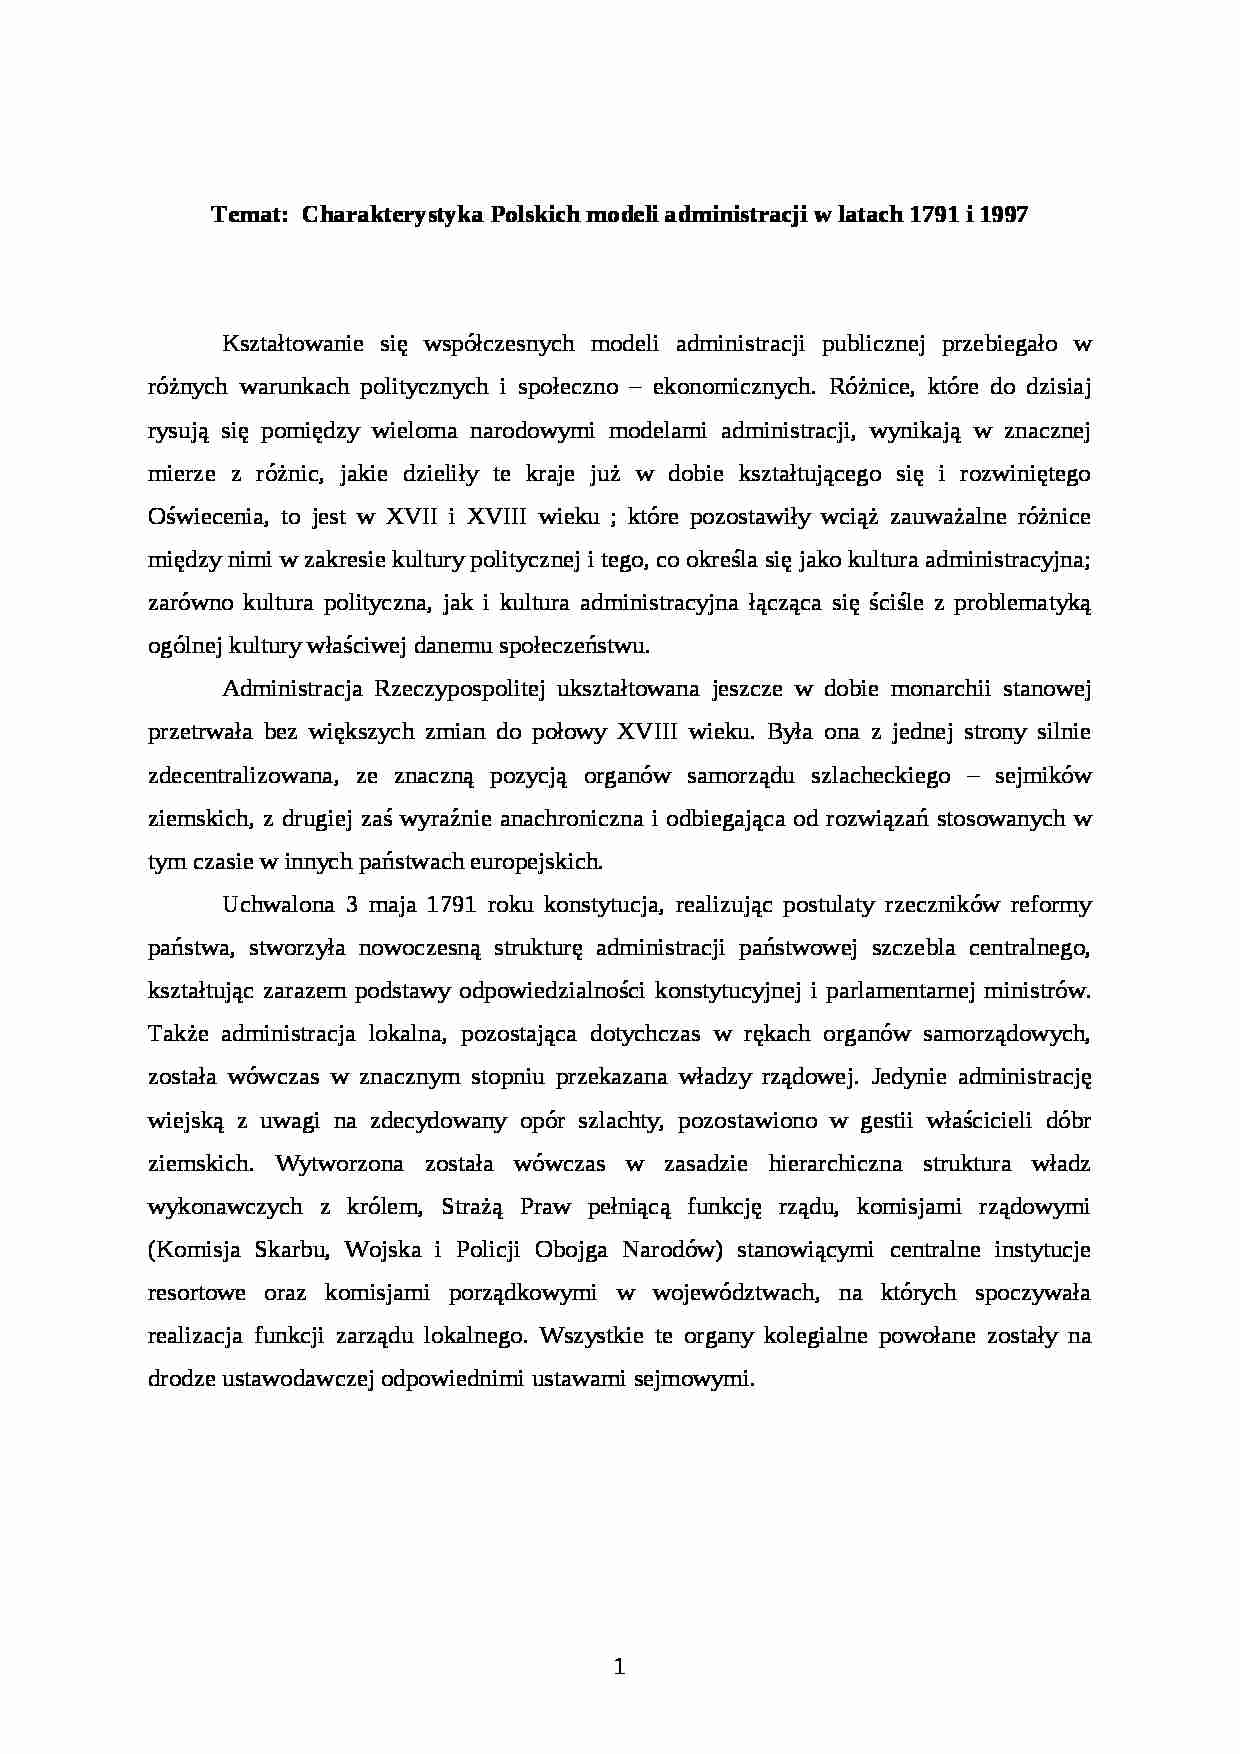 charakterystyka polskiej administracji(4 str) - strona 1